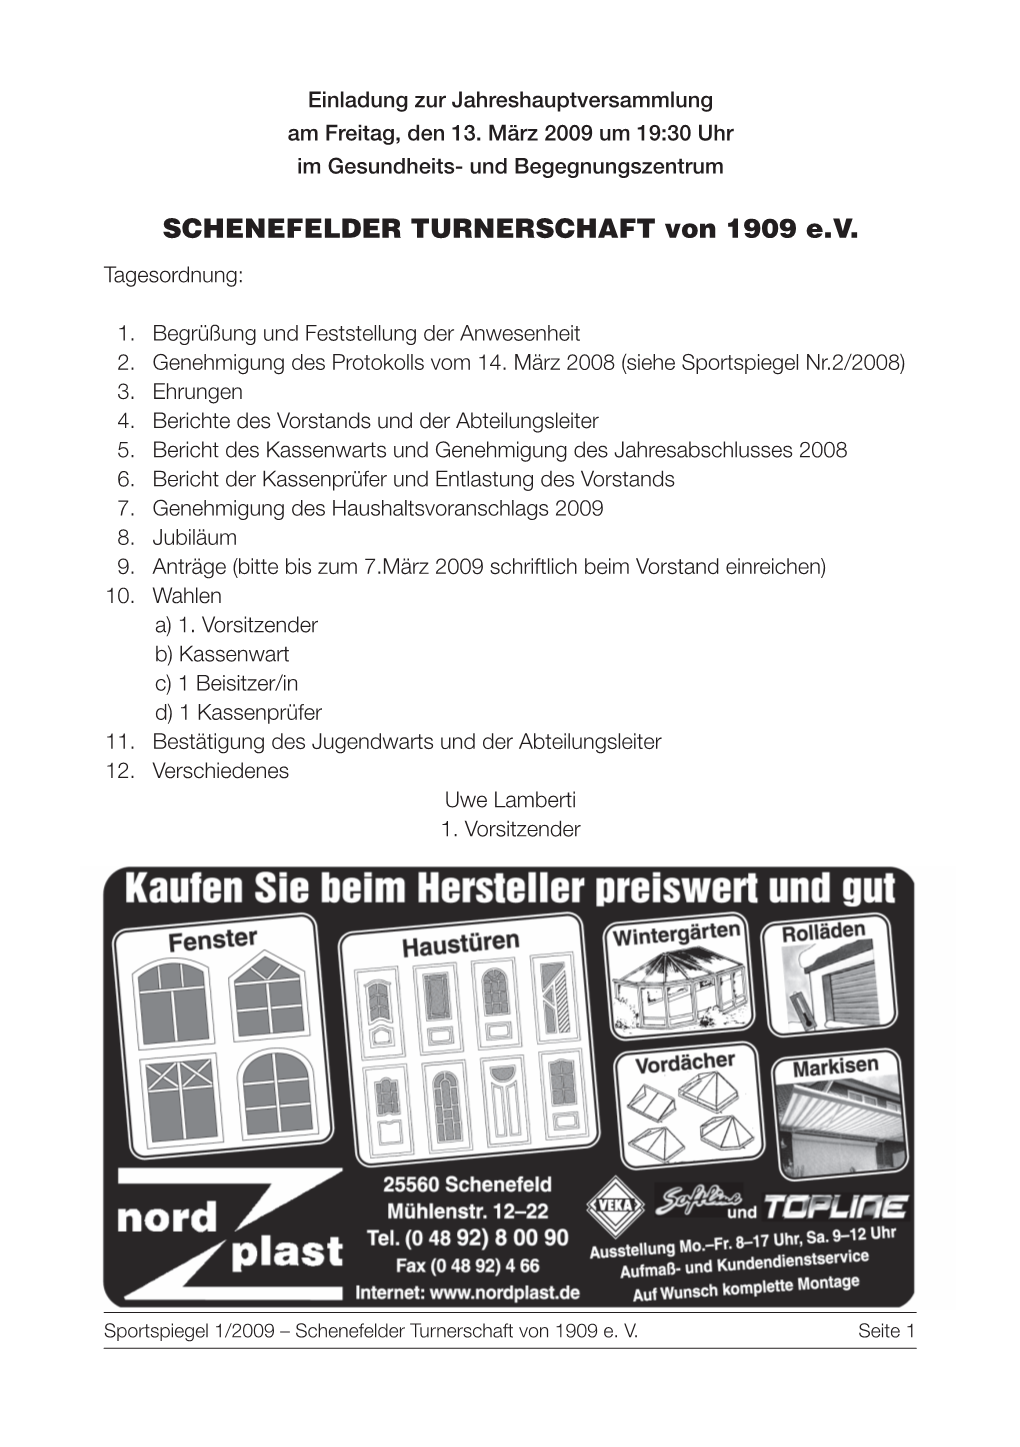 SCHENEFELDER TURNERSCHAFT Von 1909 E.V. Tagesordnung